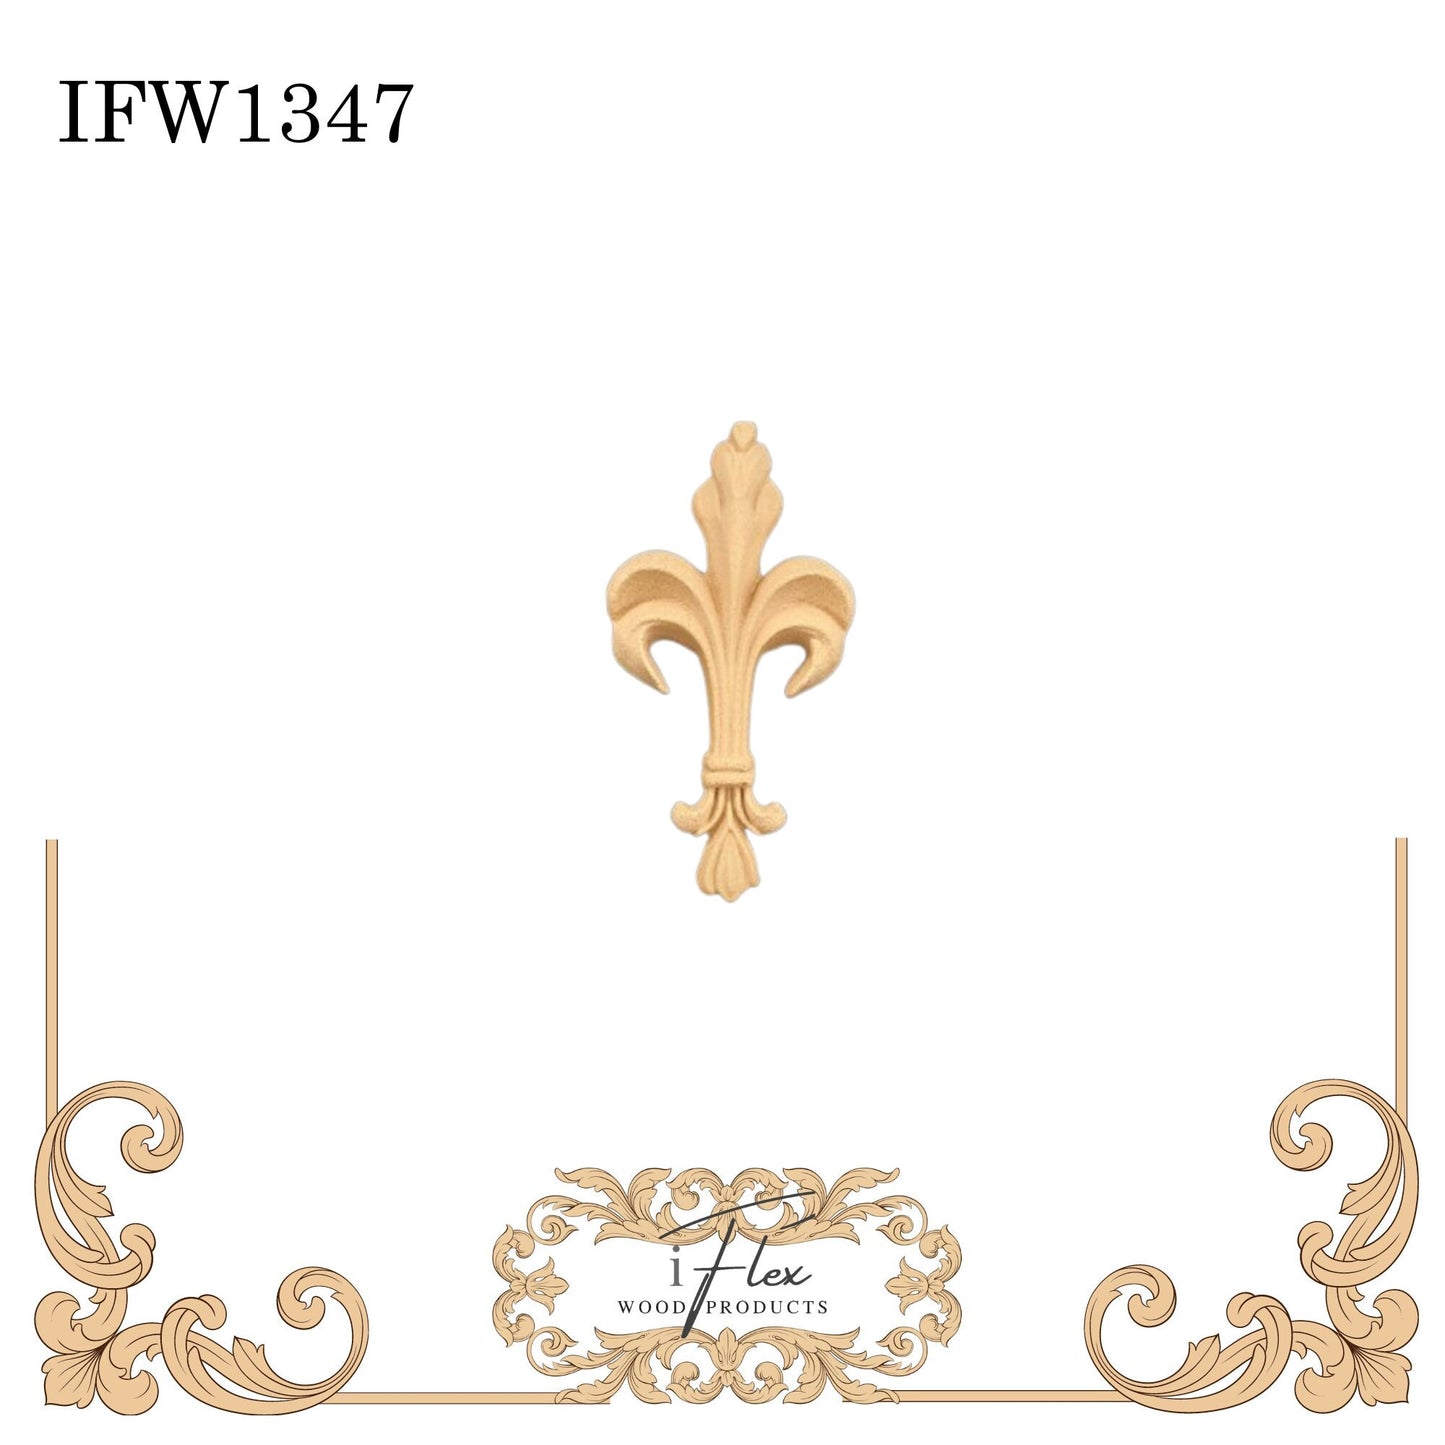 IFW 1347 iFlex Wood Products, bendable mouldings, flexible, wooden appliques, fleur de lis, floral